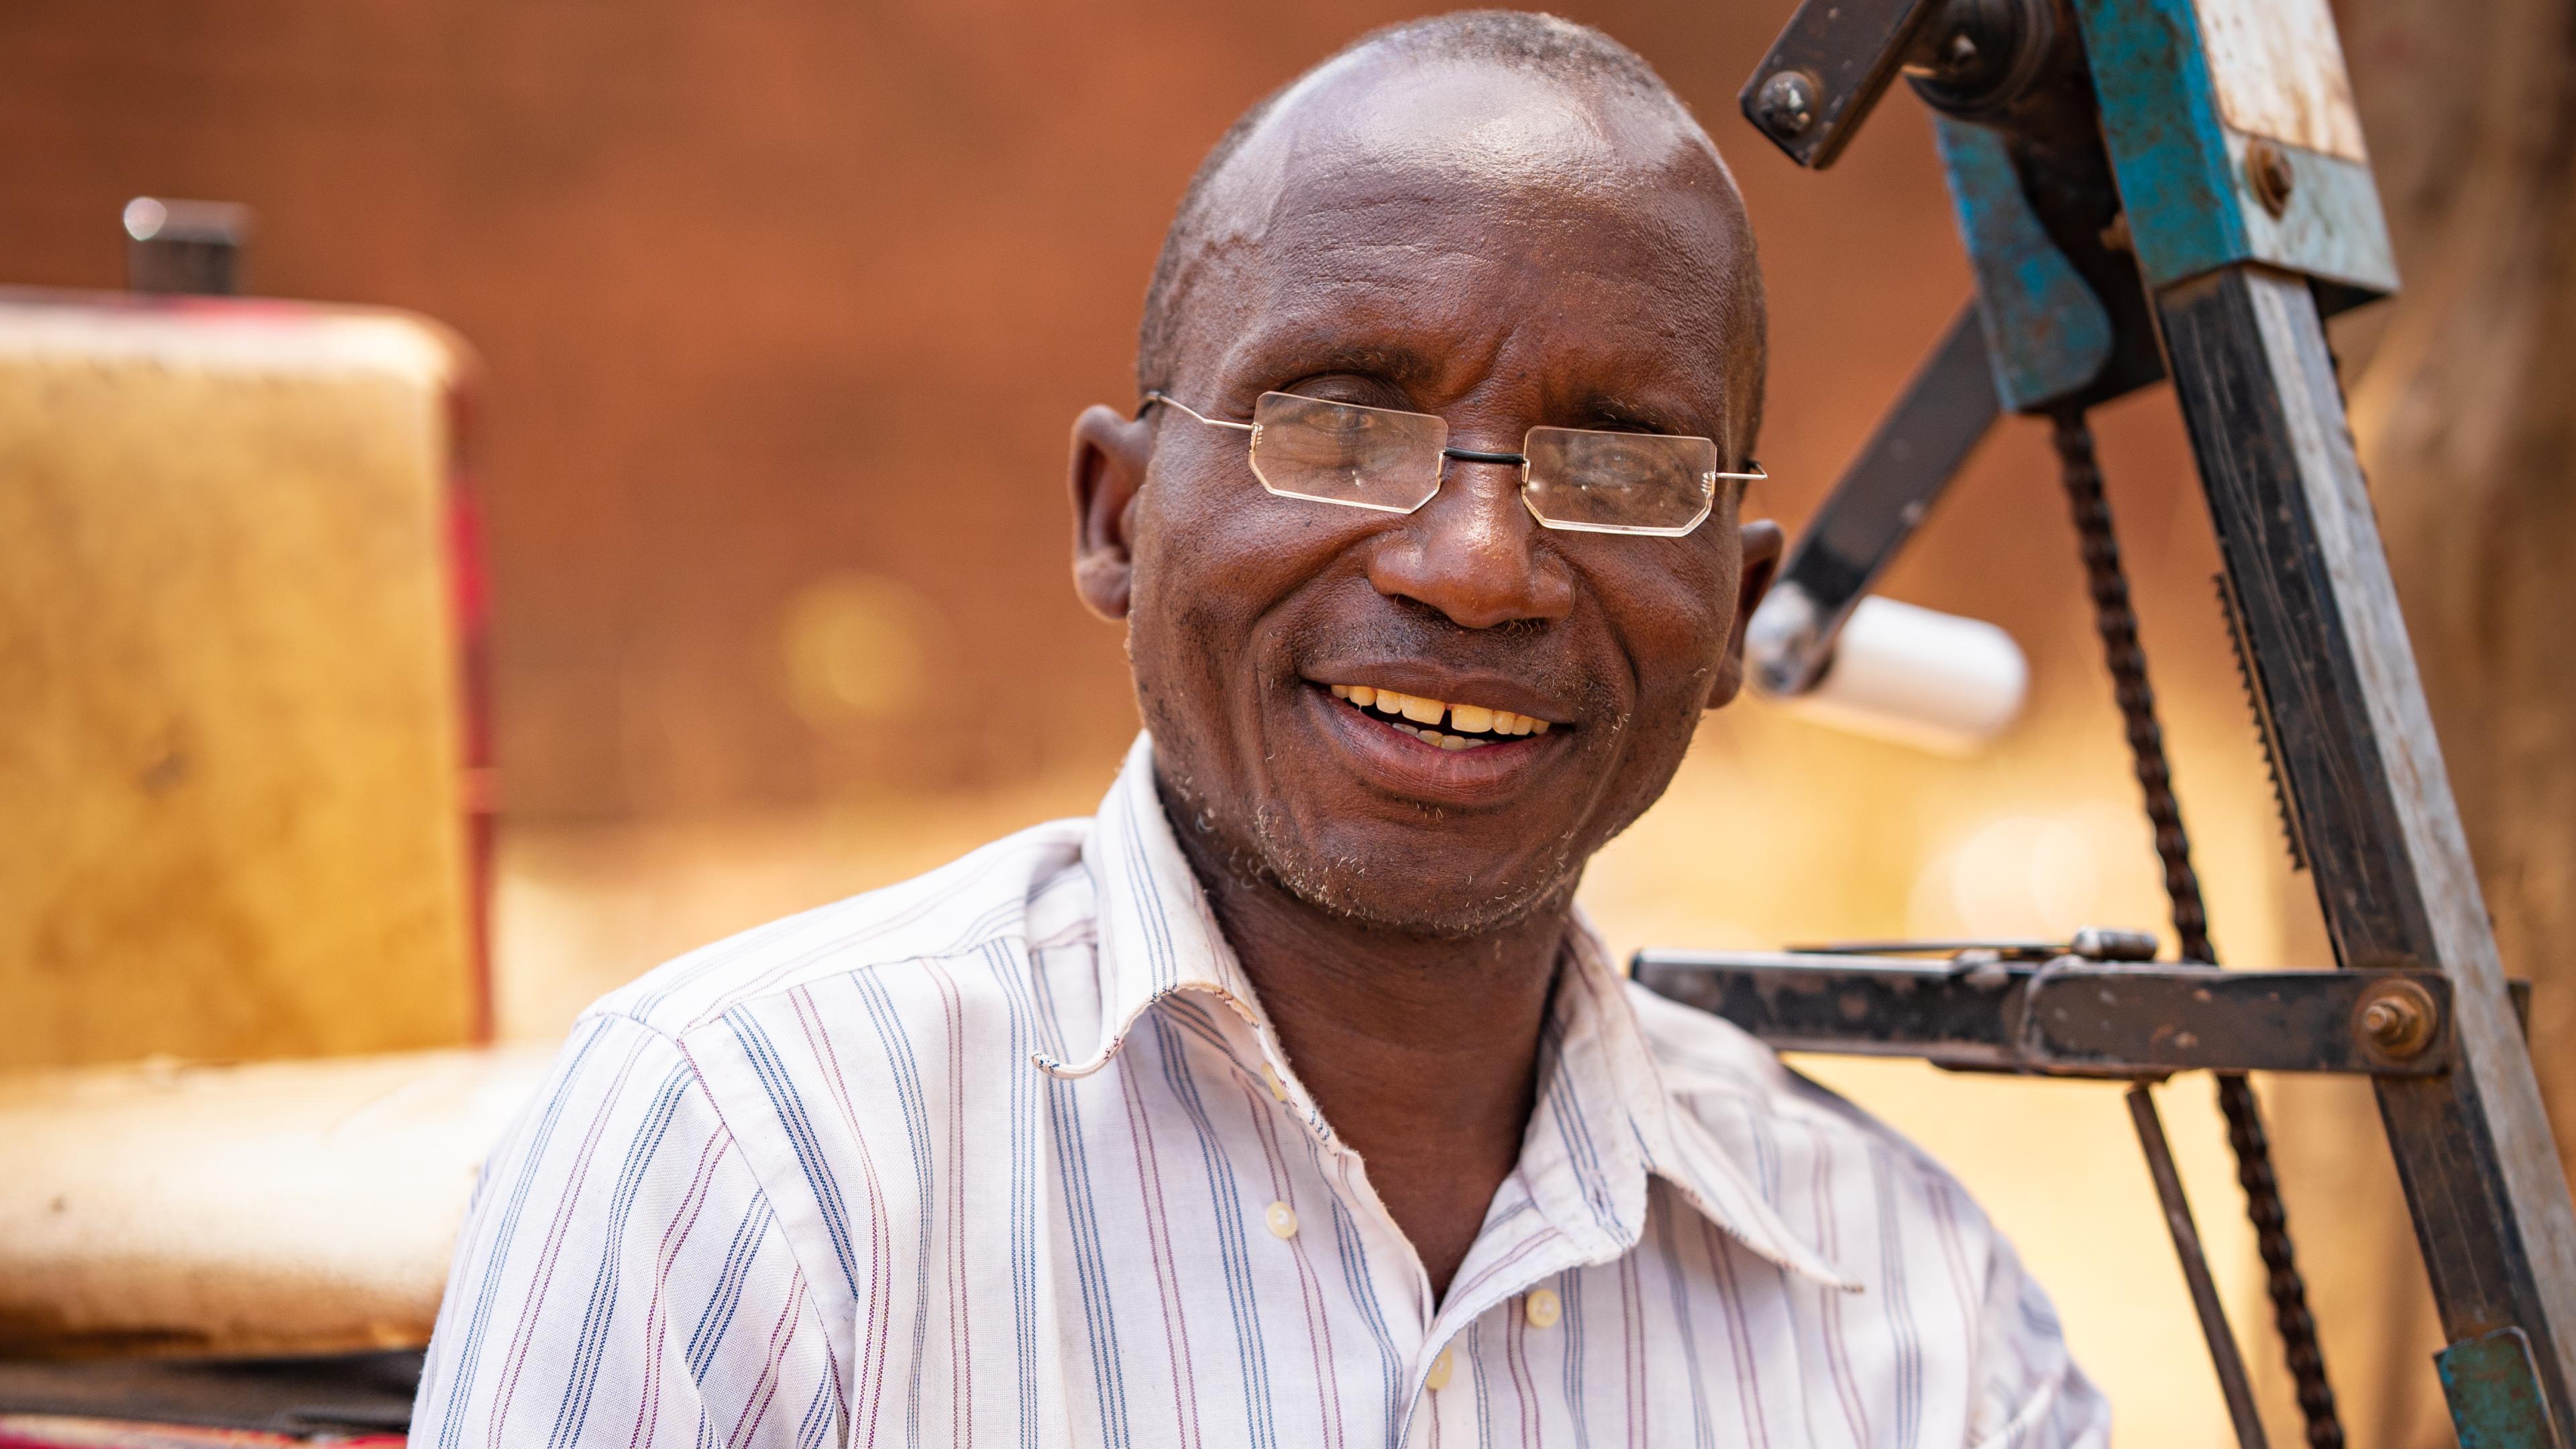 Malawischer Mann lacht mit Brille